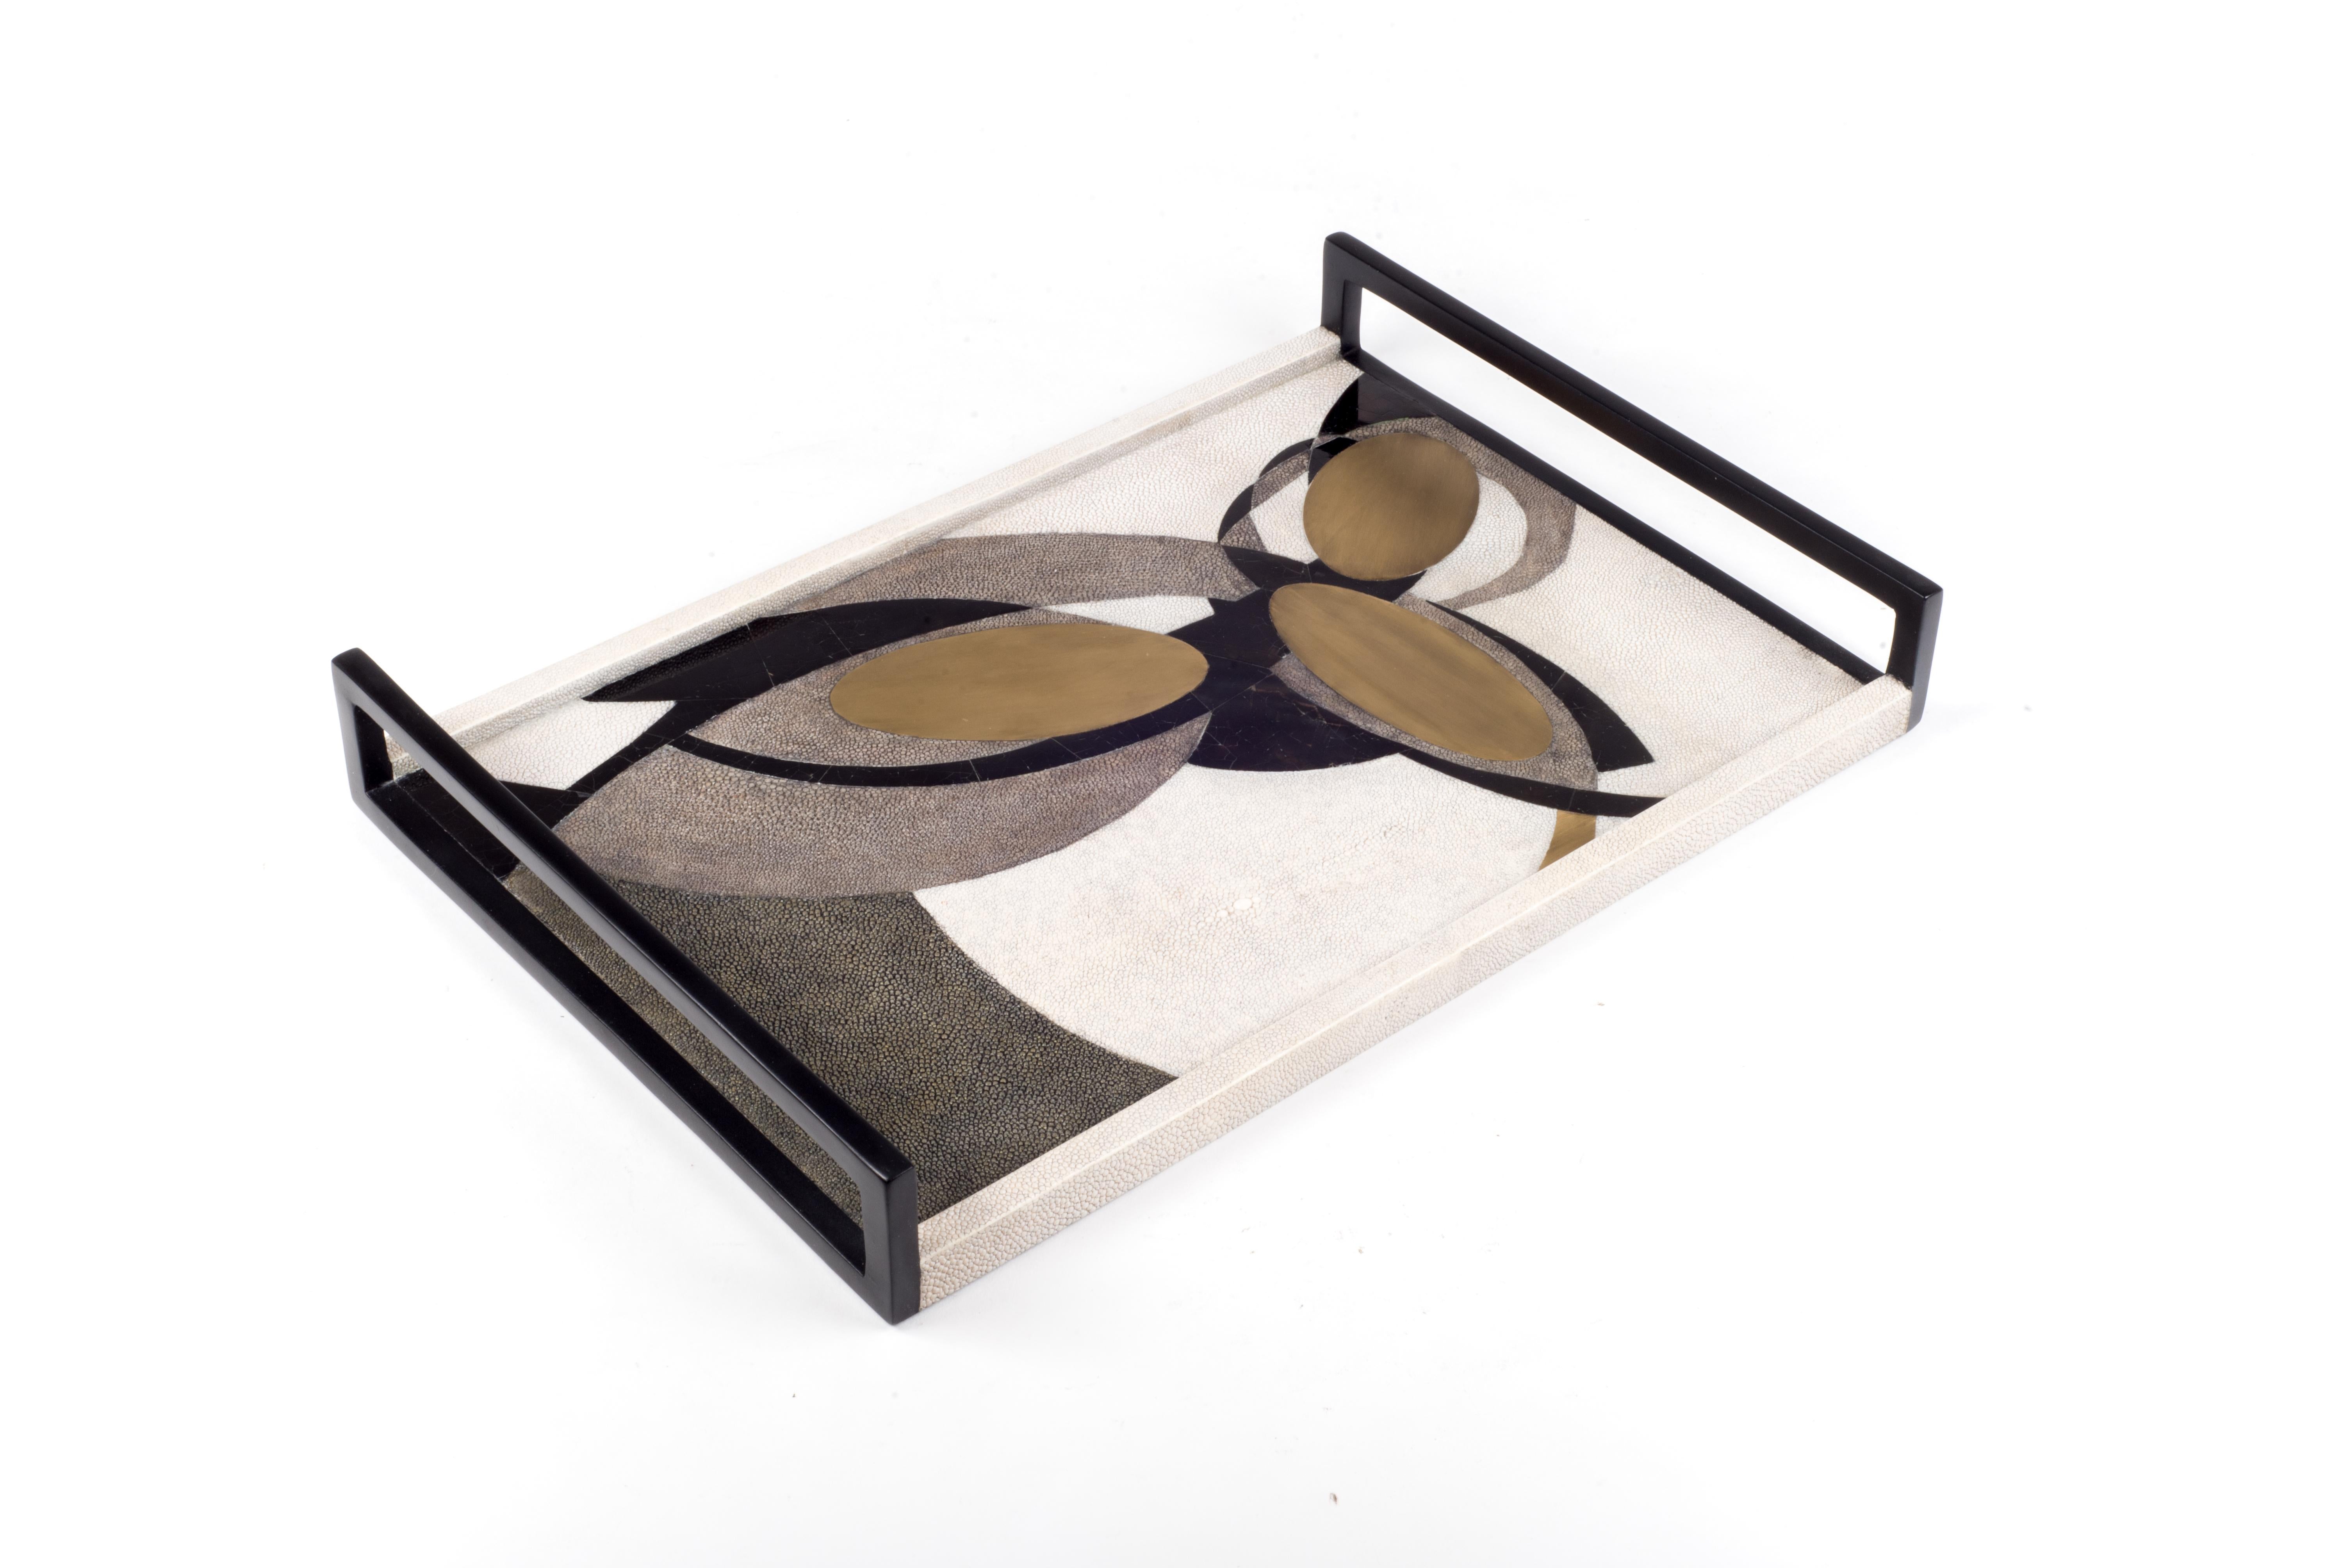 Das dunkle Lunar-Tablett in Medium zeigt die wunderschöne, für Augousti typische Einlegearbeit und Designästhetik. Dieses Muster ist eine abstrakte Interpretation der Mondkonstellationen. Erhältlich in anderen Größen und Farb- sowie